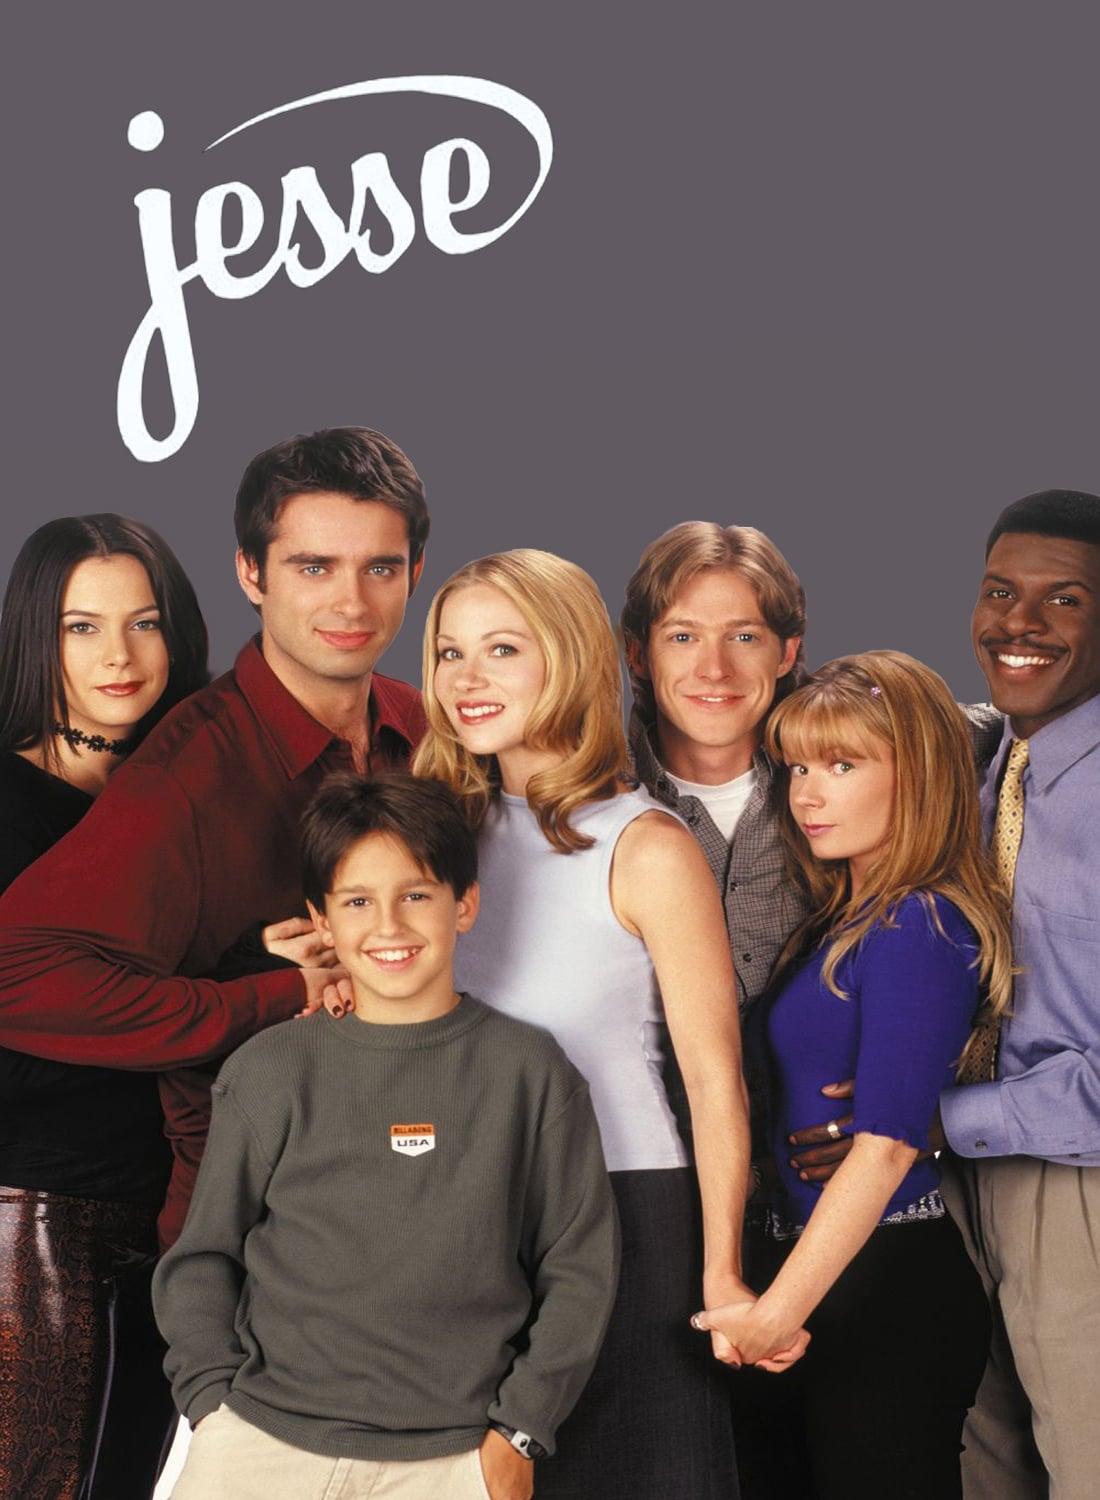 Jesse poster